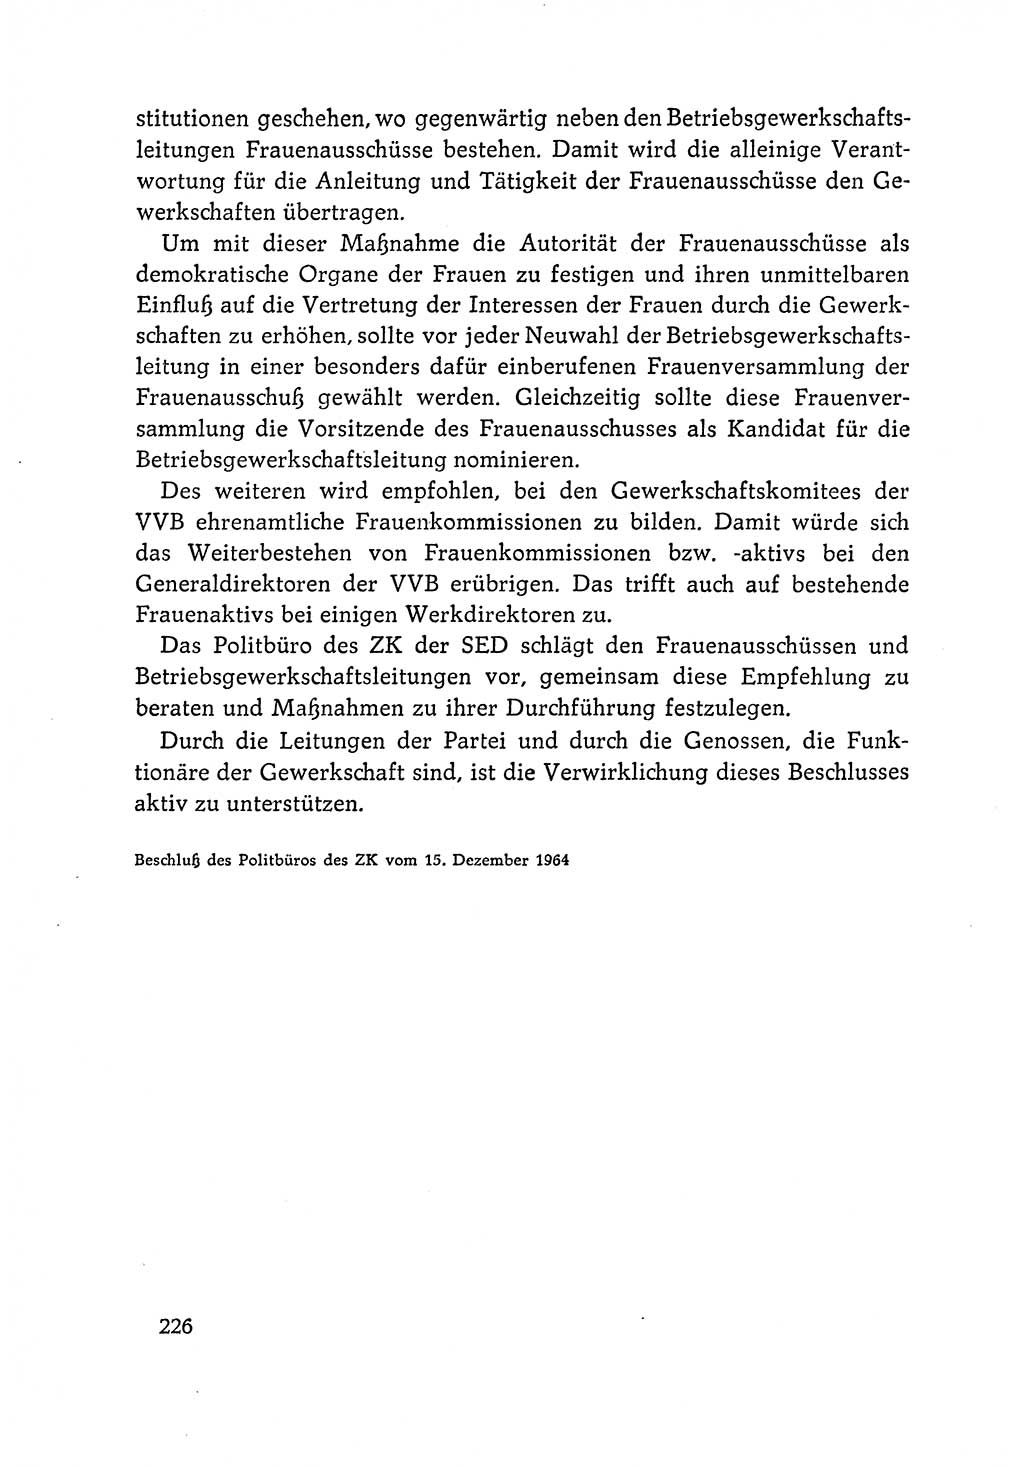 Dokumente der Sozialistischen Einheitspartei Deutschlands (SED) [Deutsche Demokratische Republik (DDR)] 1964-1965, Seite 226 (Dok. SED DDR 1964-1965, S. 226)